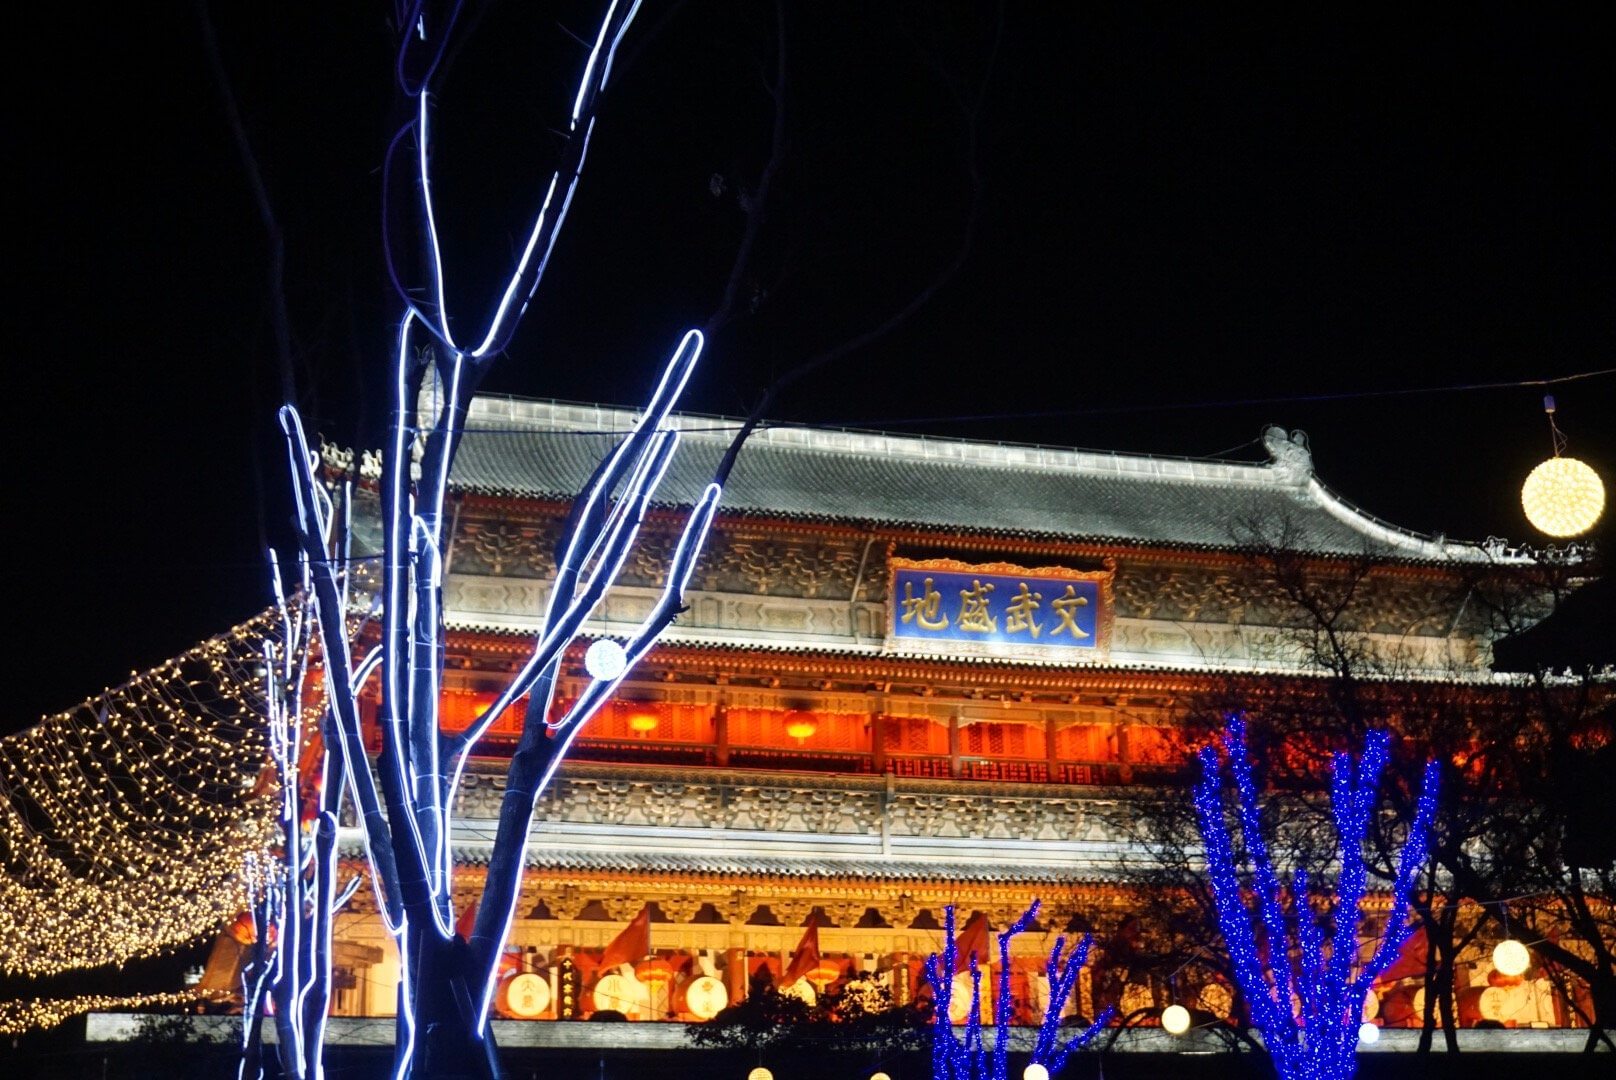 La Drum tower de Xian illuminée